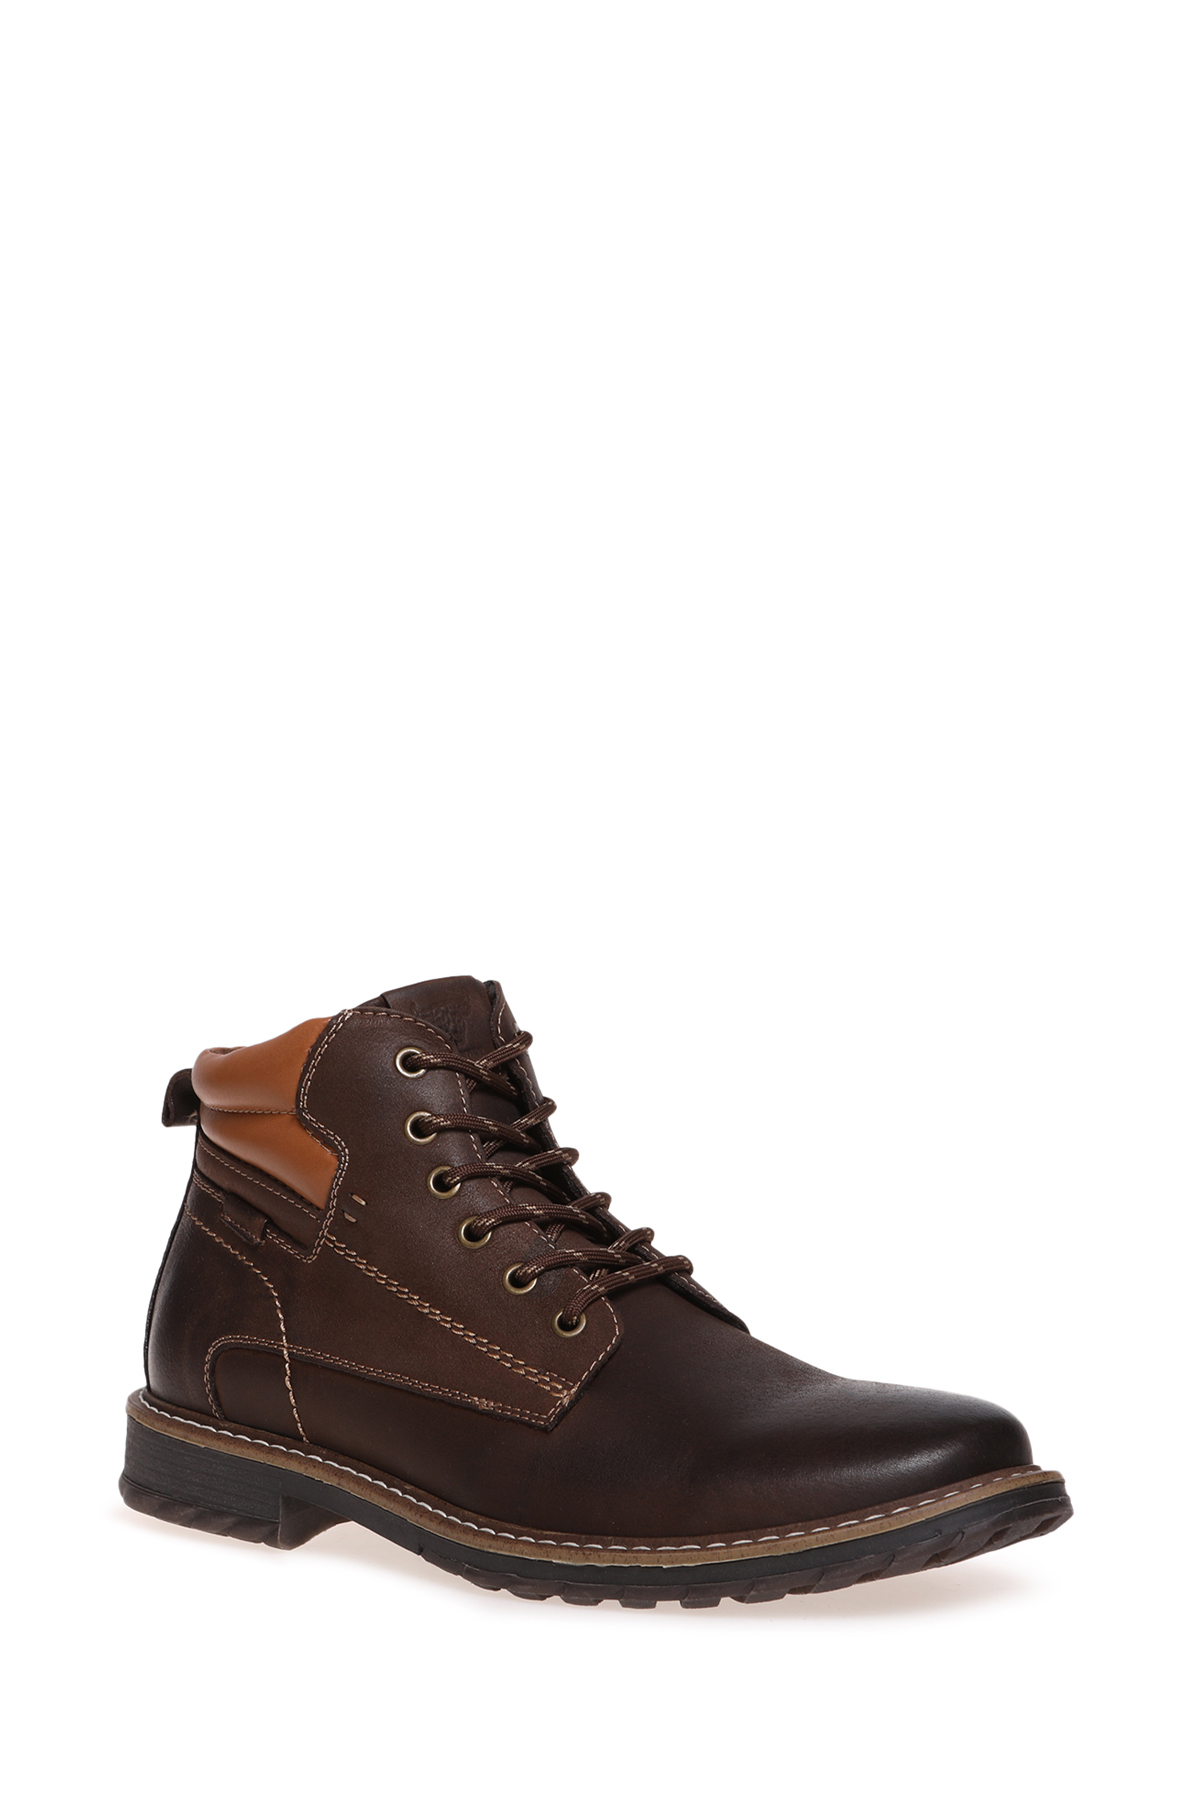 Ботинки мужские El Tempo CDG5_YED2033-01-T коричневые 45 RU